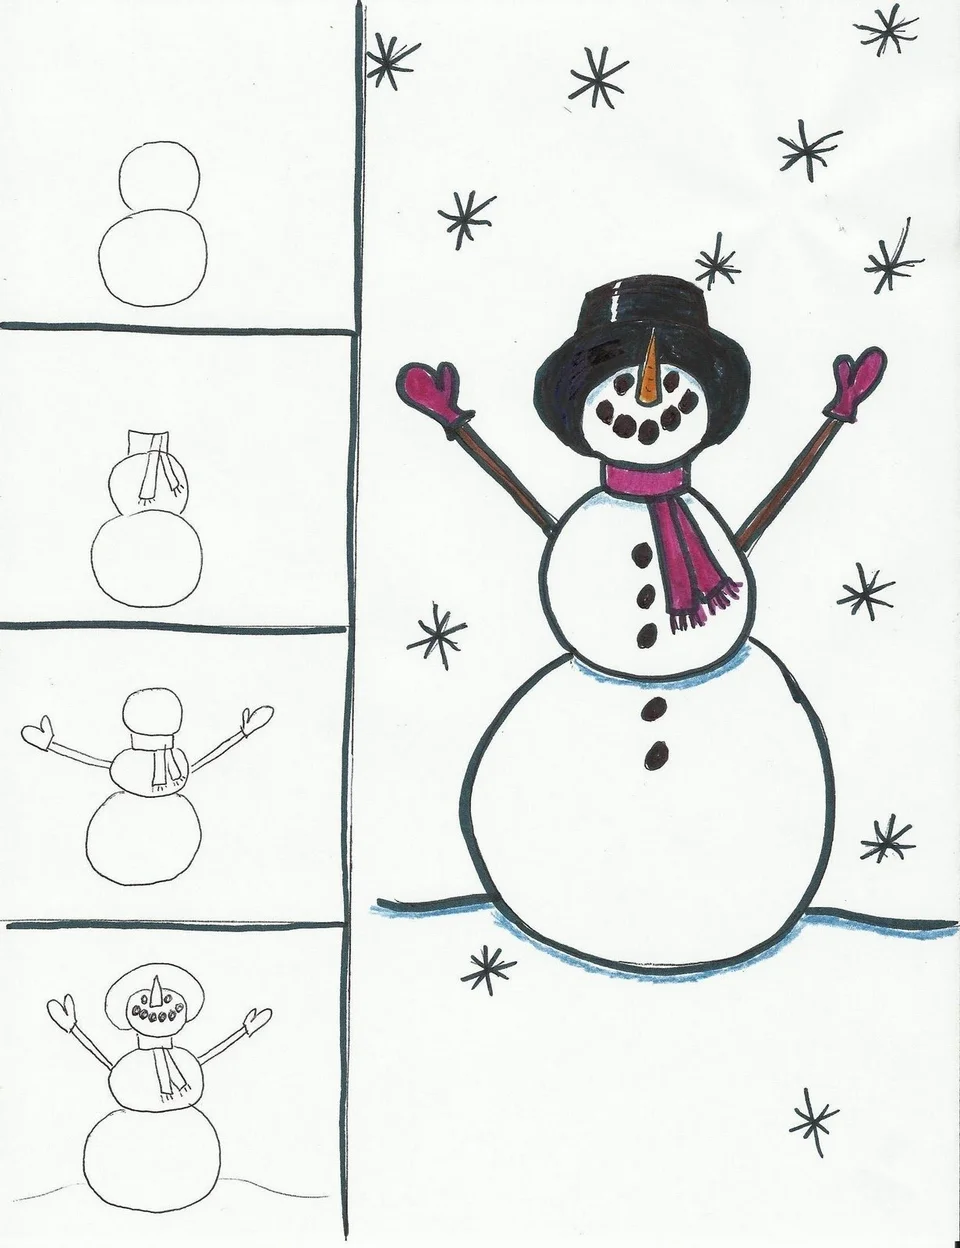 Снеговик рисунок для детей поэтапно